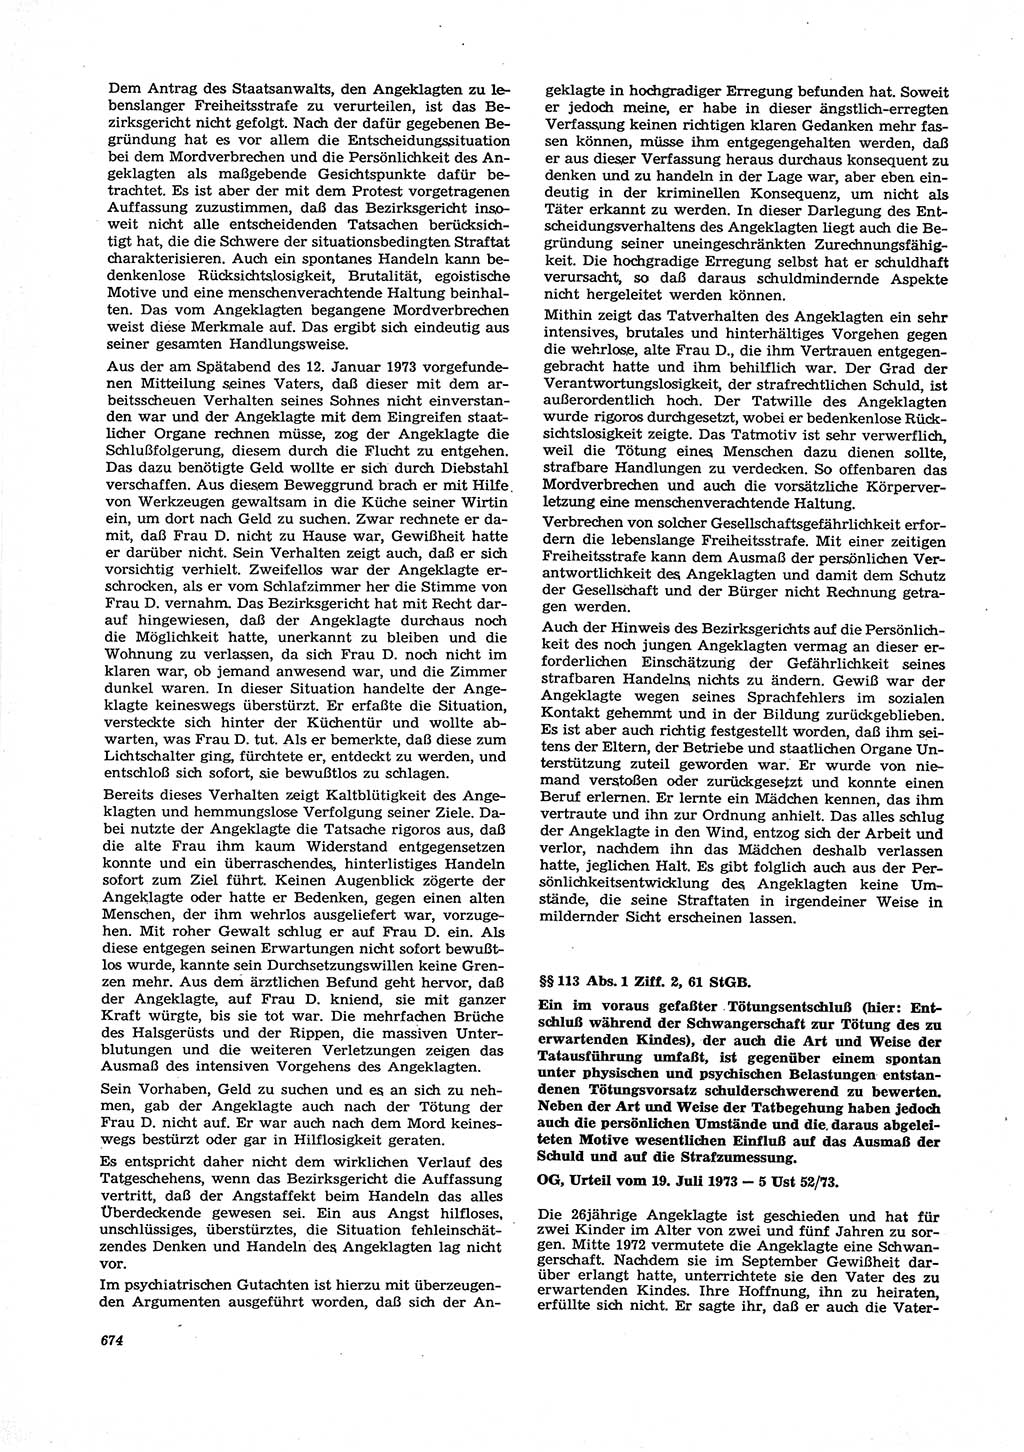 Neue Justiz (NJ), Zeitschrift für Recht und Rechtswissenschaft [Deutsche Demokratische Republik (DDR)], 27. Jahrgang 1973, Seite 674 (NJ DDR 1973, S. 674)